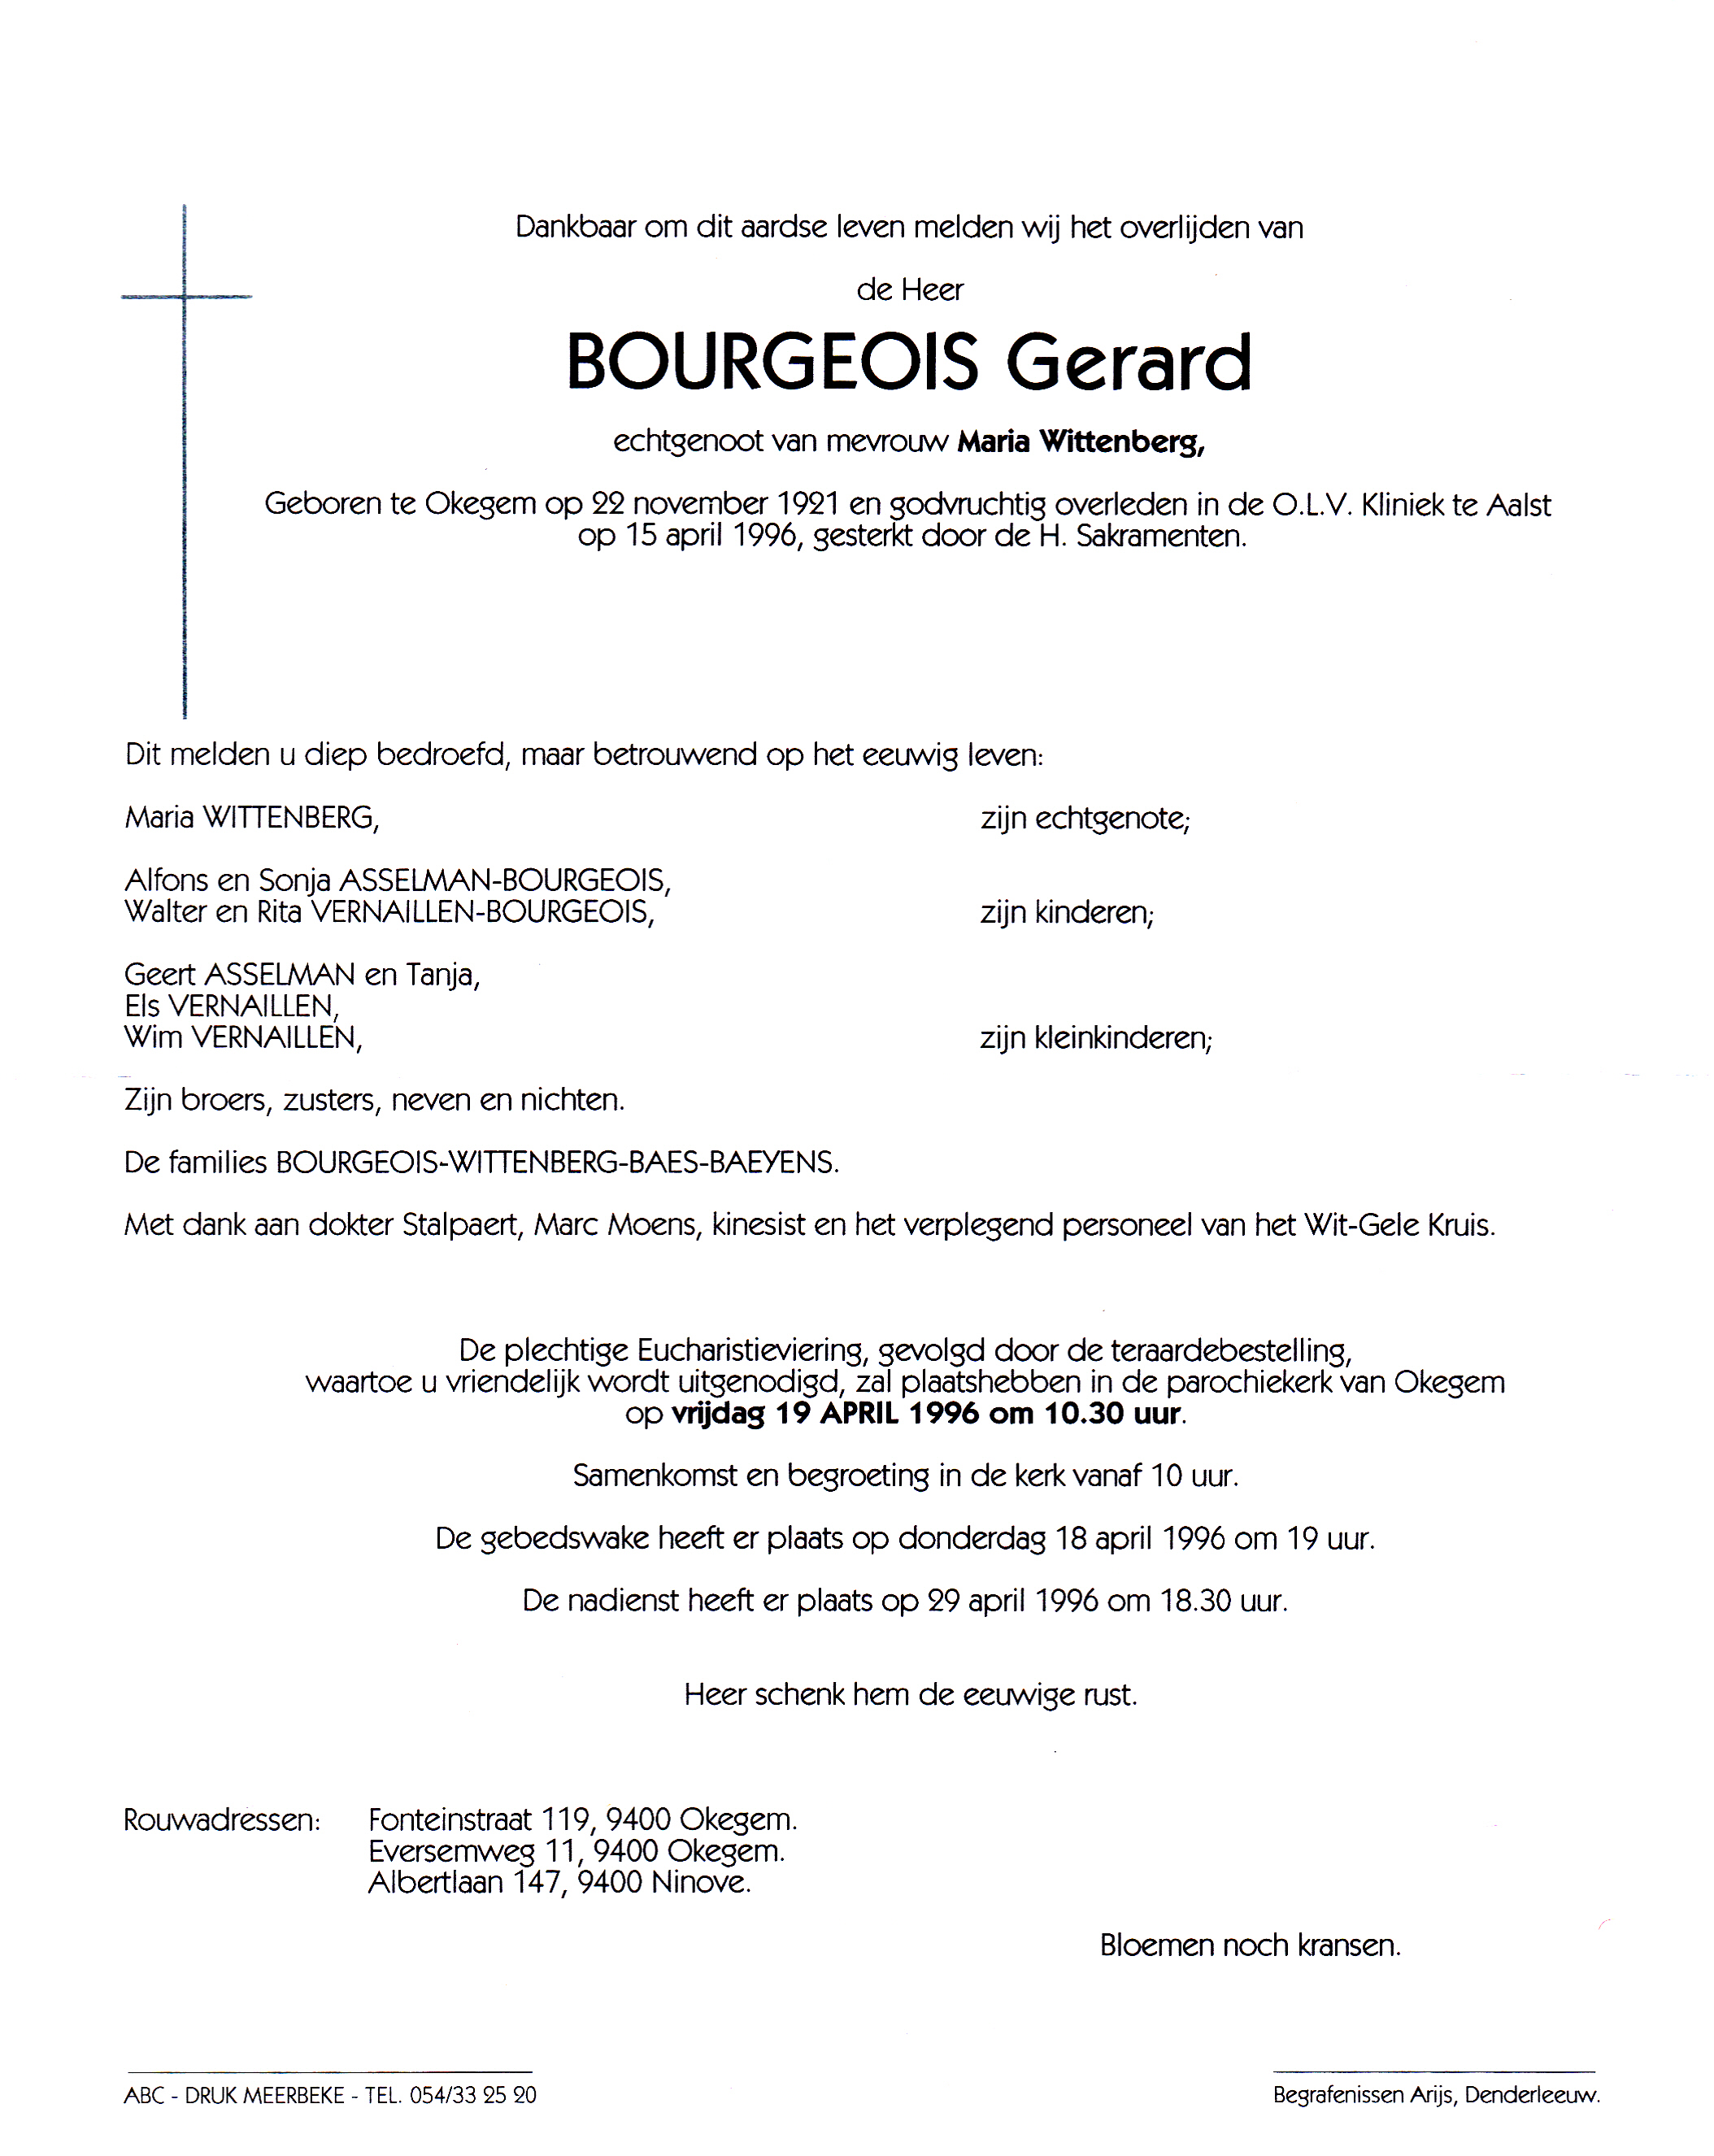 Bourgeois Gerard 